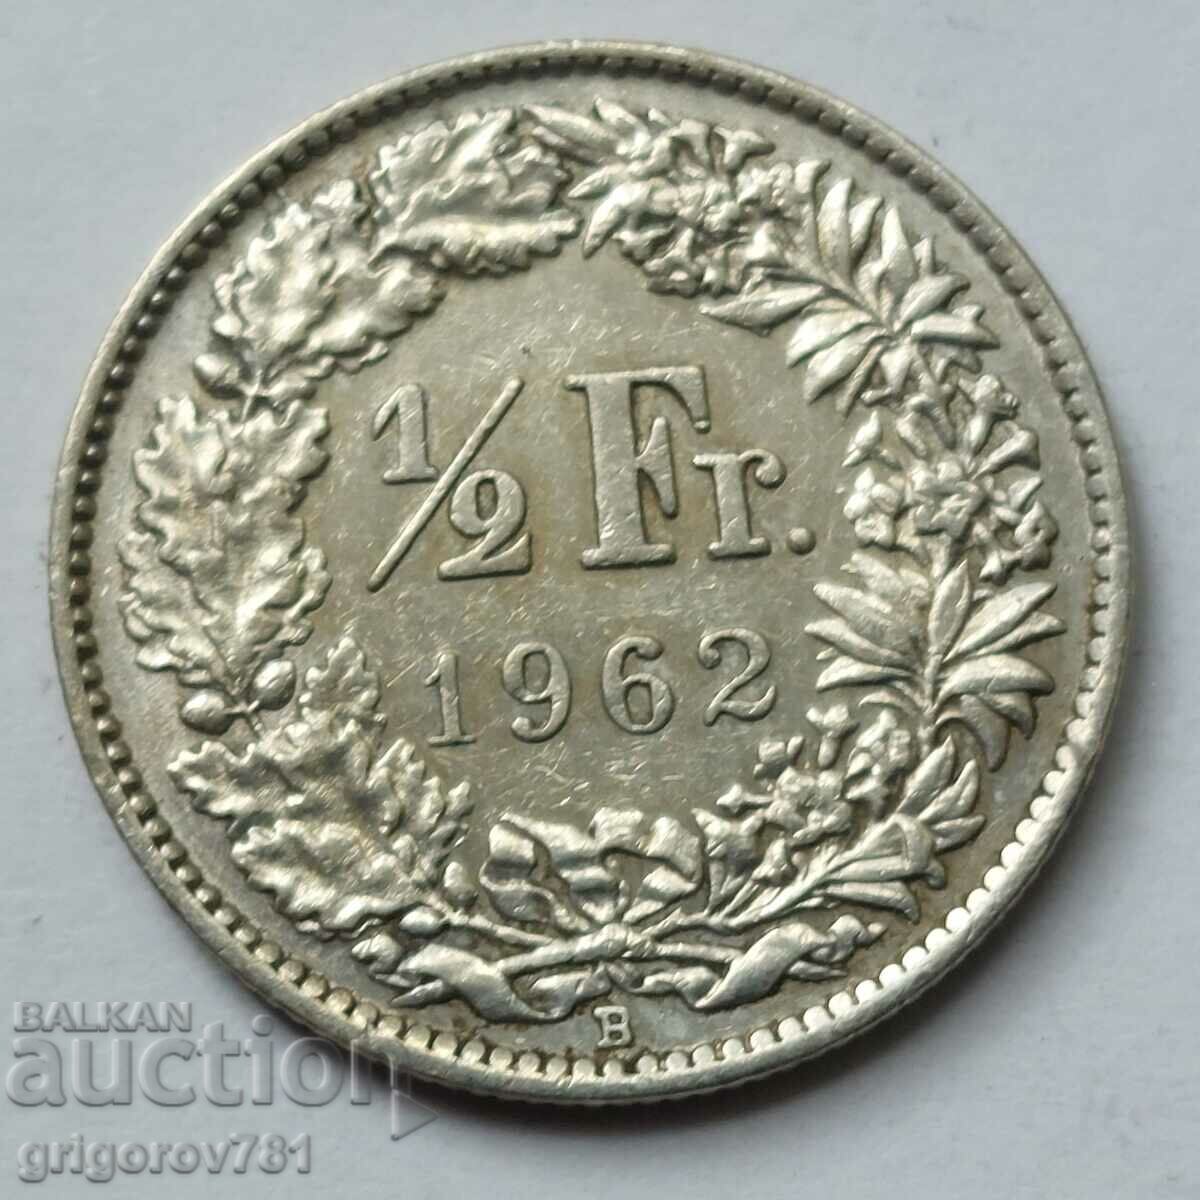 Ασημένιο φράγκο 1/2 Ελβετία 1962 Β - Ασημένιο νόμισμα #60